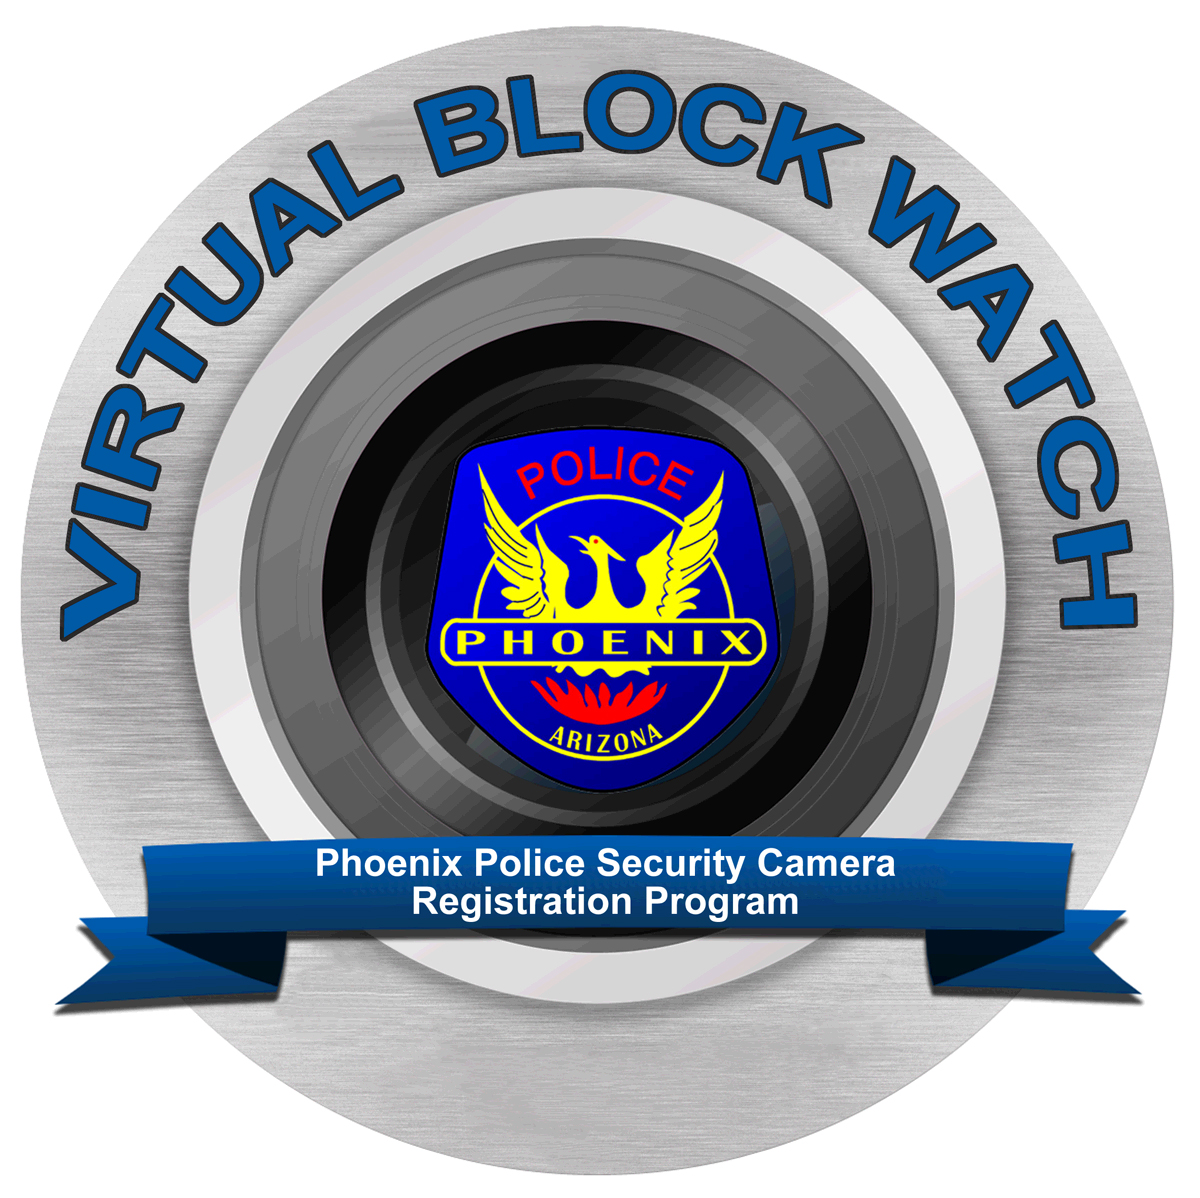 VirtualBlockWatch